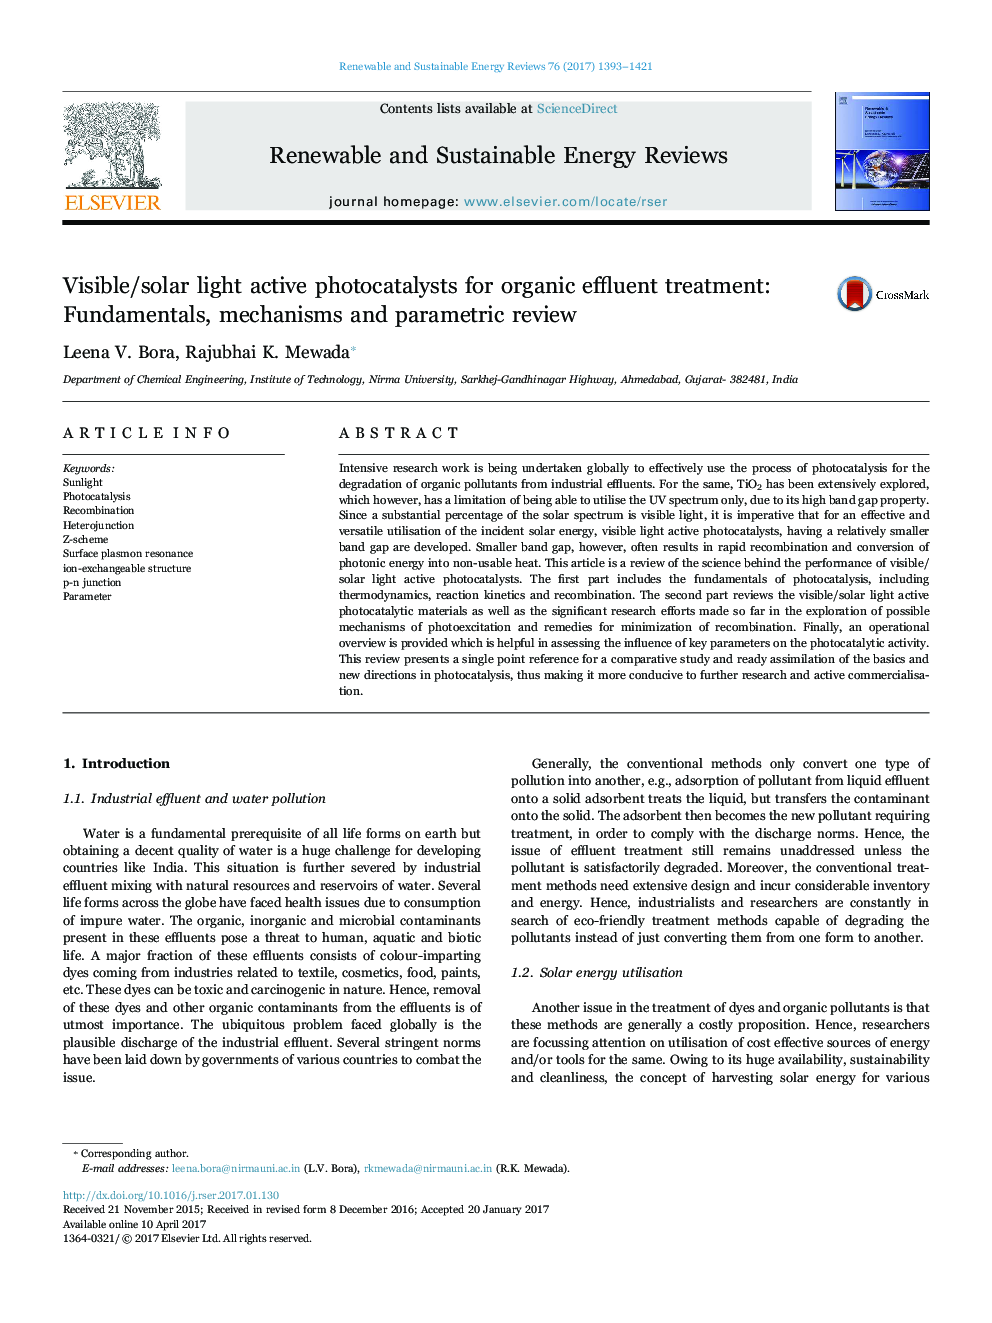 فوتوکاتالیست های فعال قابل مشاهده / نور خورشیدی برای درمان پساب آلی: اصول، مکانیزم و بررسی پارامتری 